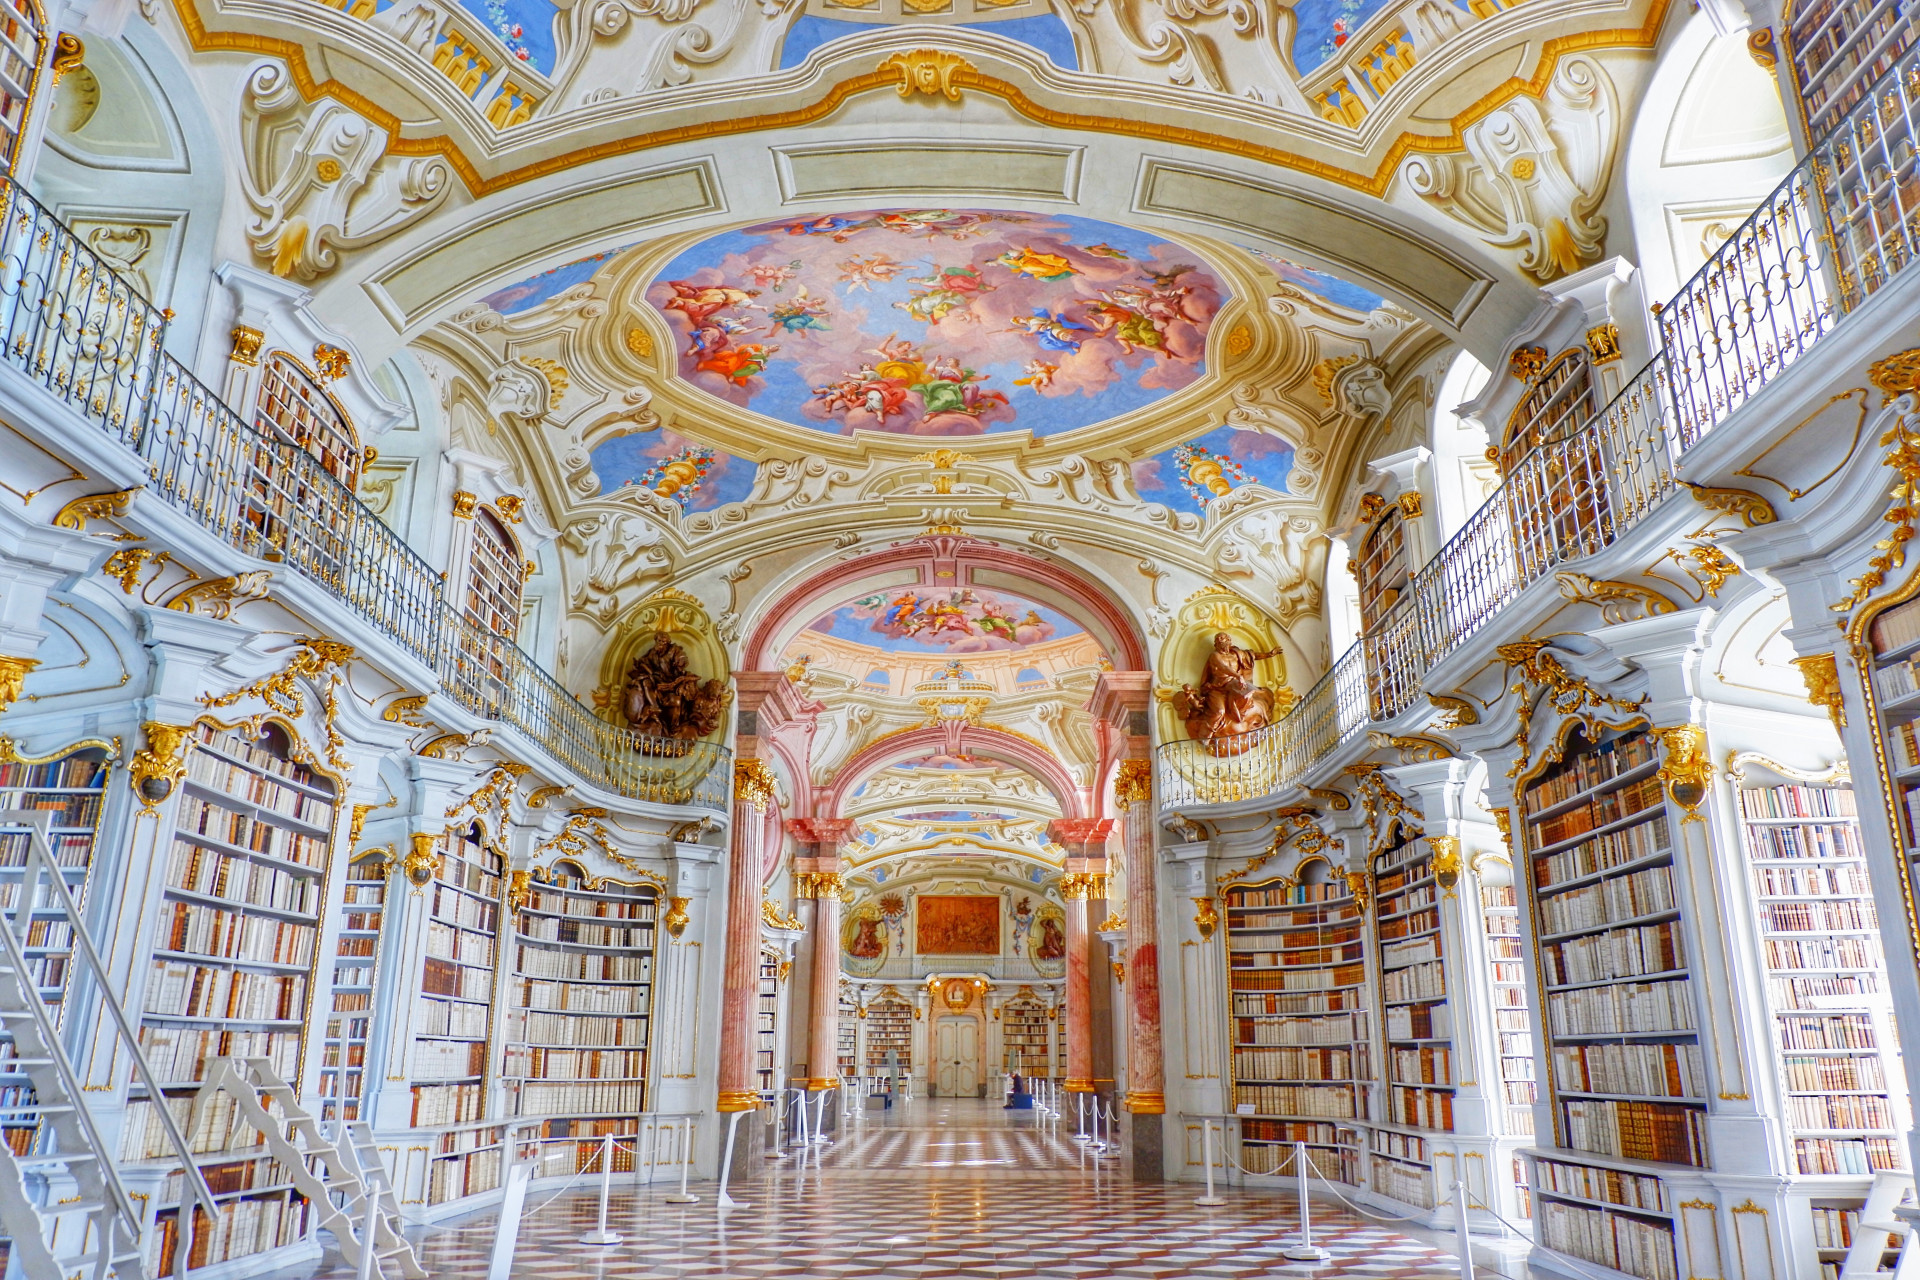 Ce monument exceptionnel se trouve dans la ville autrichienne d'Admont et il s'agit de la plus vaste bibliothèque monastique du monde. De nos jours, elle renferme plus de 180 000 ouvrages, dont 1 400 manuscrits, volumes anciens et éditions originales de livres rares...